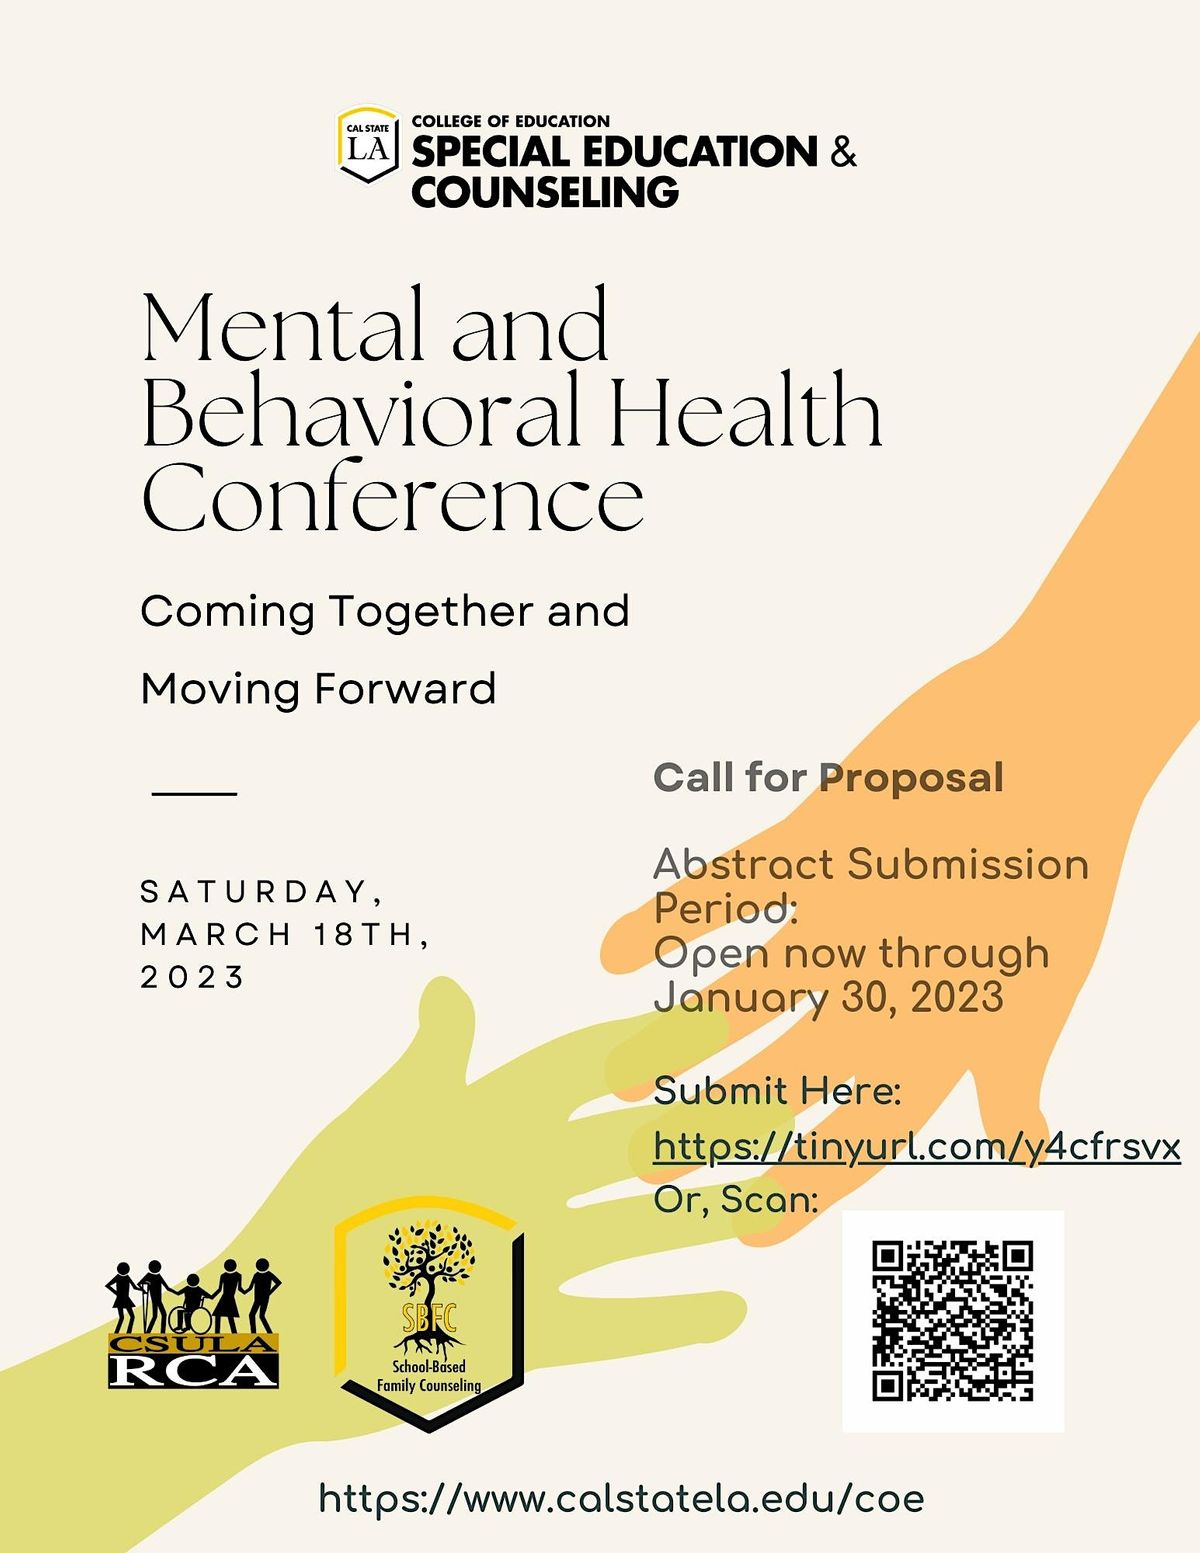 Mental and Behavioral Health Conference Golden Eagle Building, Los